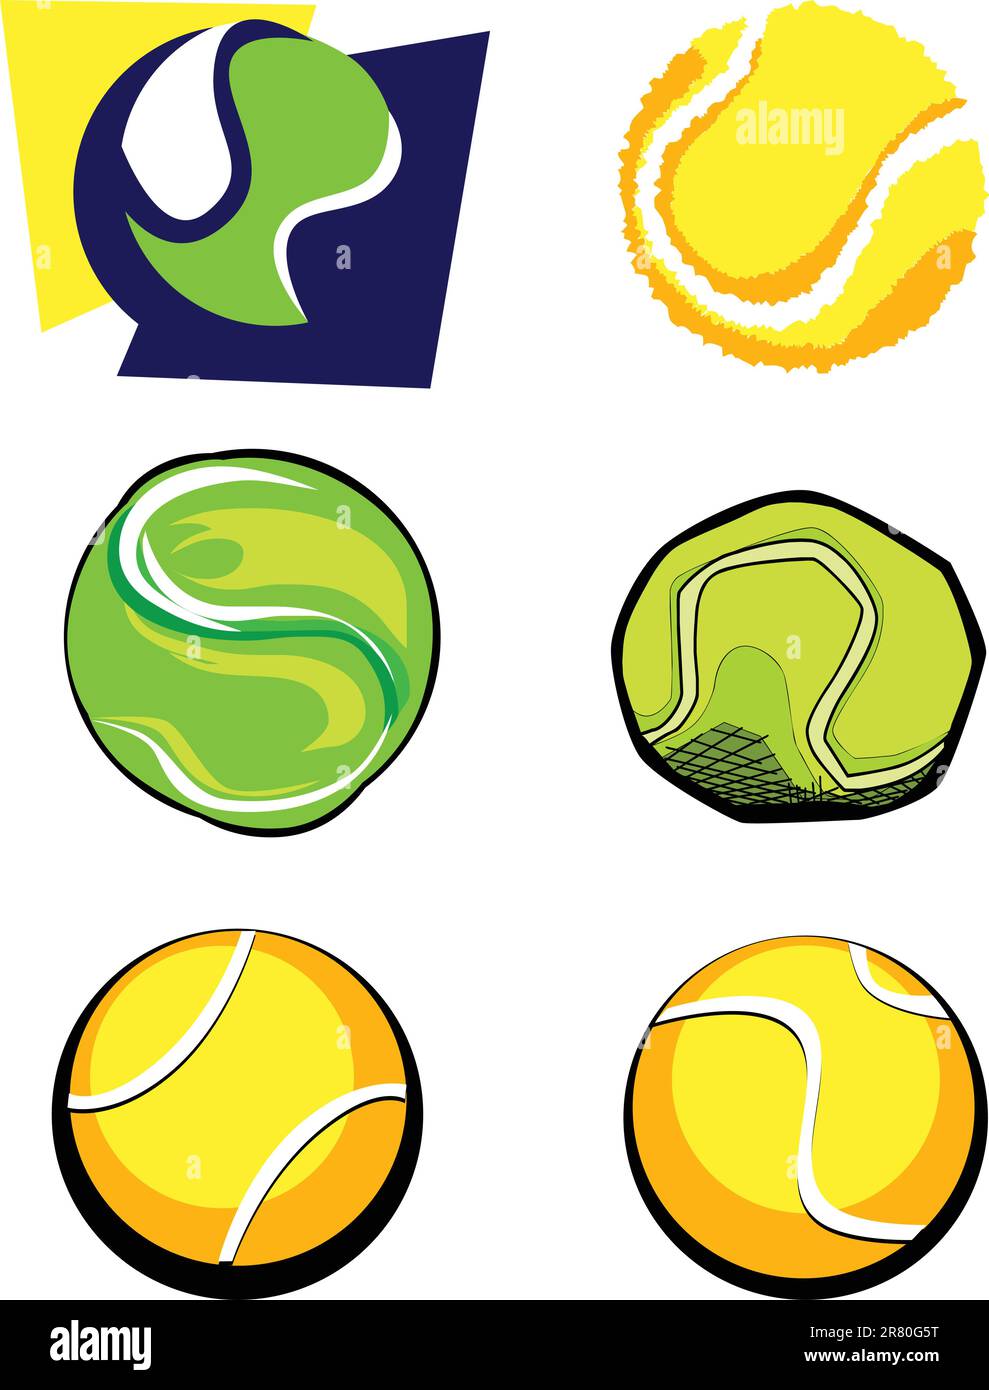 Vektorgruppe der sechs Tennisball-Illustrationen Stock Vektor